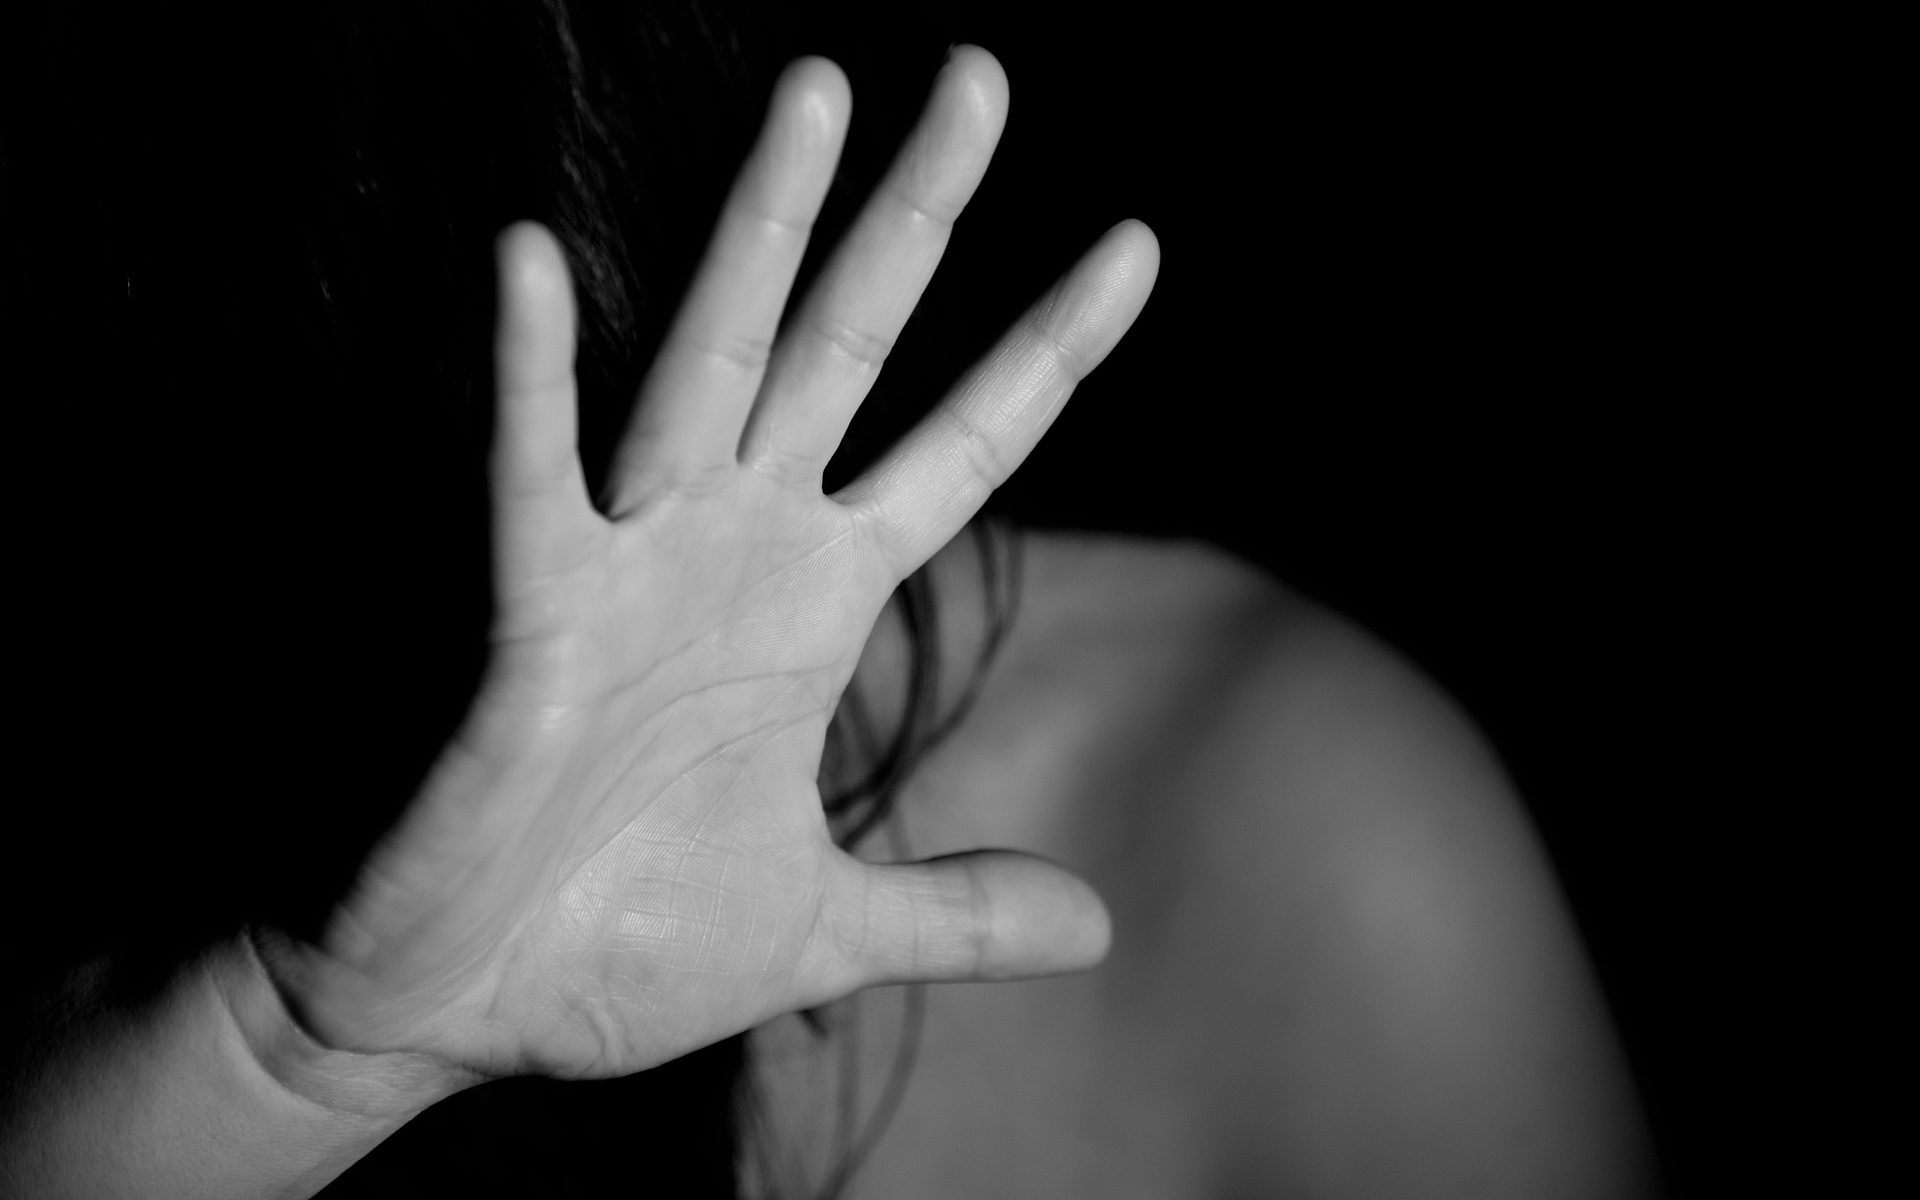 Eine Hand in abwehrender Haltung- ein schwarz-weiß Bild